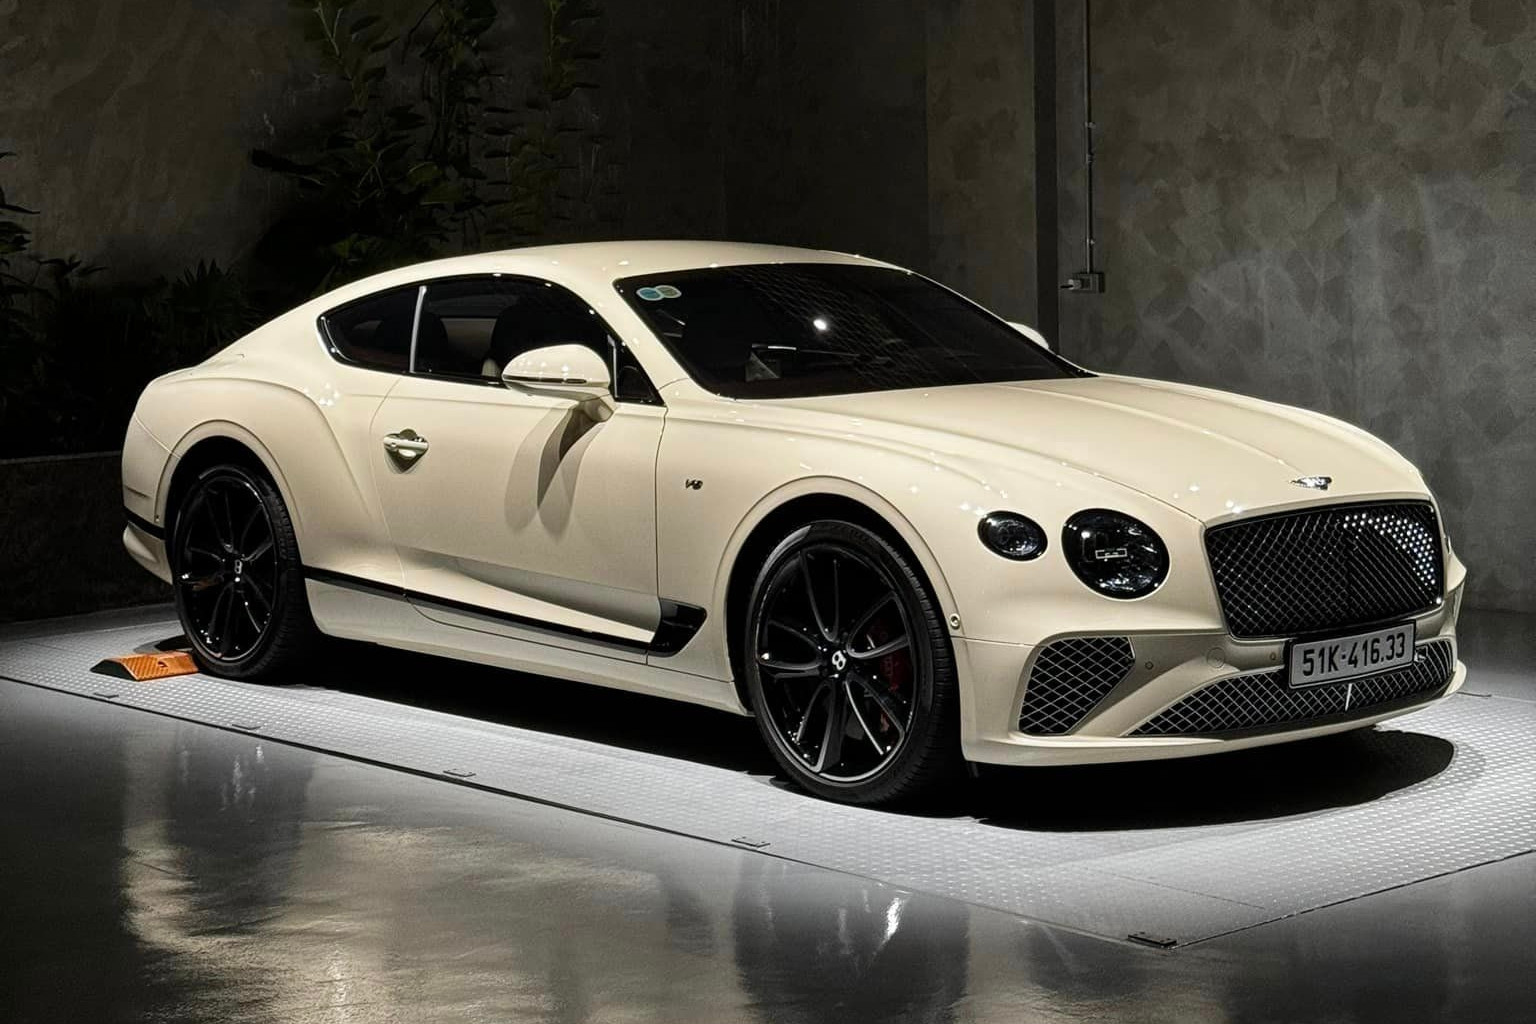 Đặc điểm nhận diện của hãng Bentley đó là logo hình chữ B có cánh xung quanh 